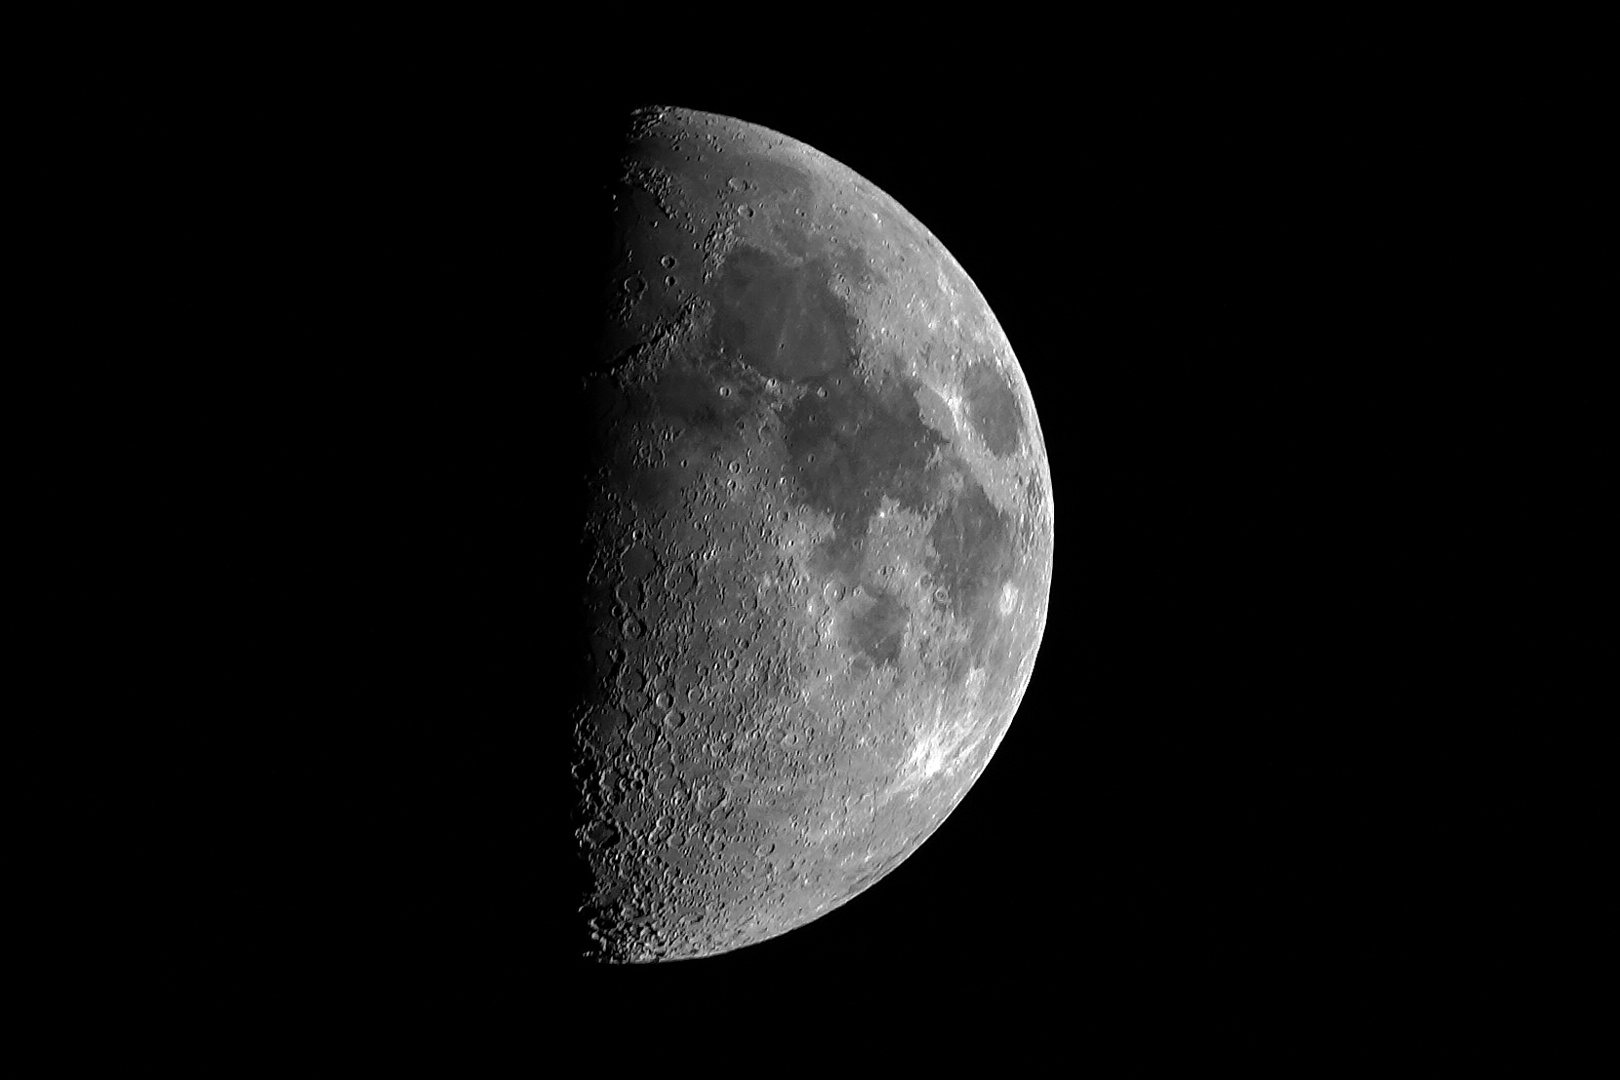 Mond 090422